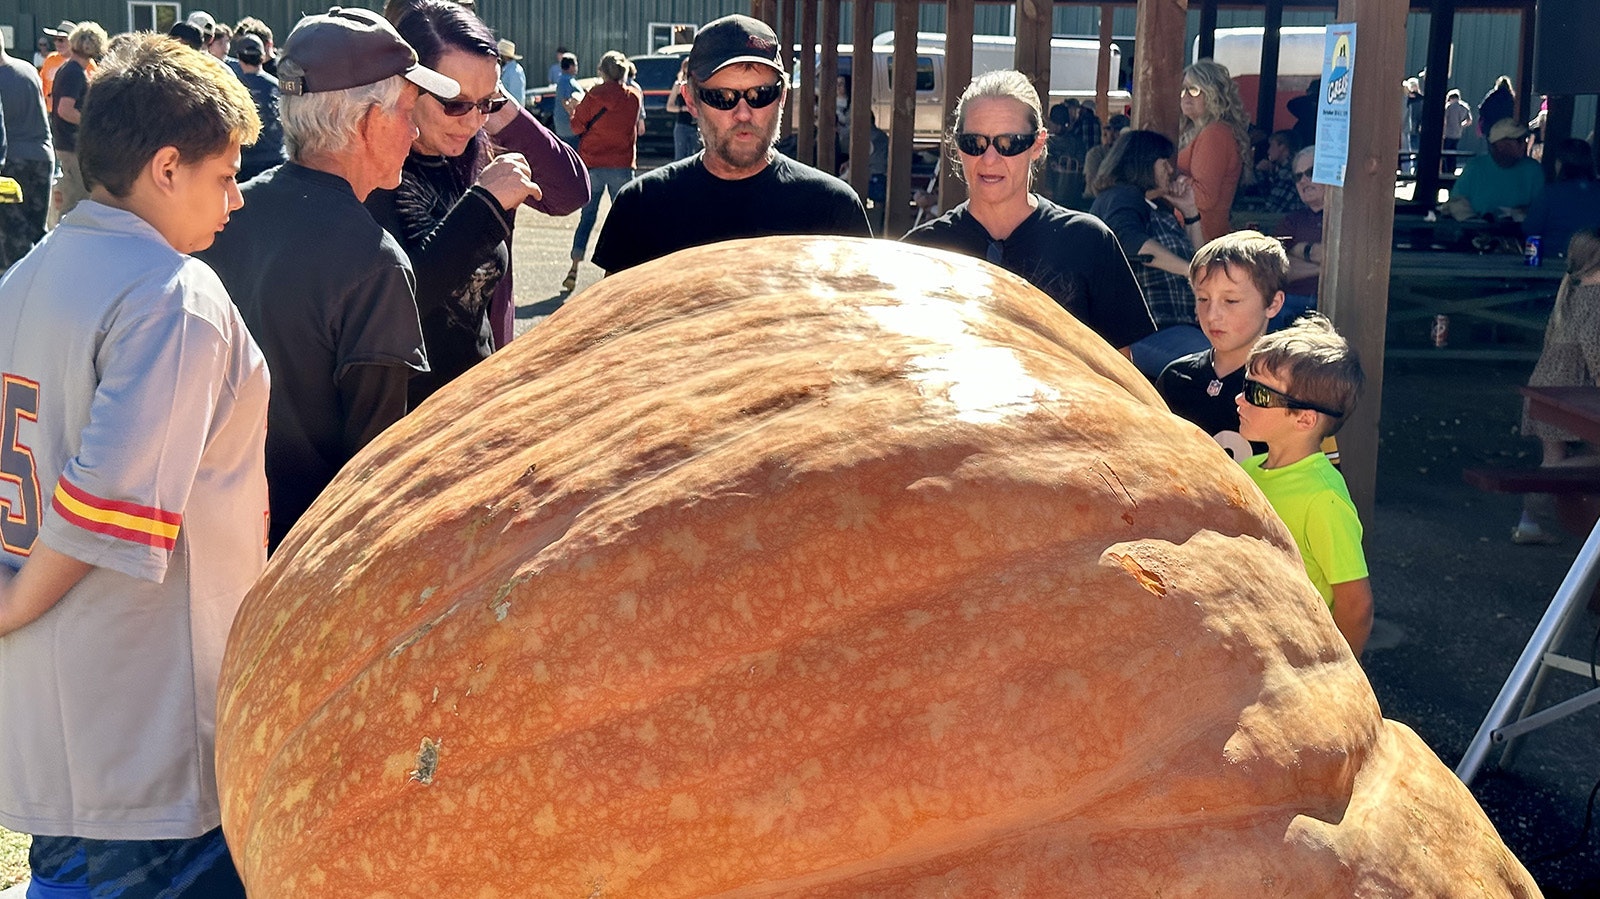 Gather 'round the pumpkin.